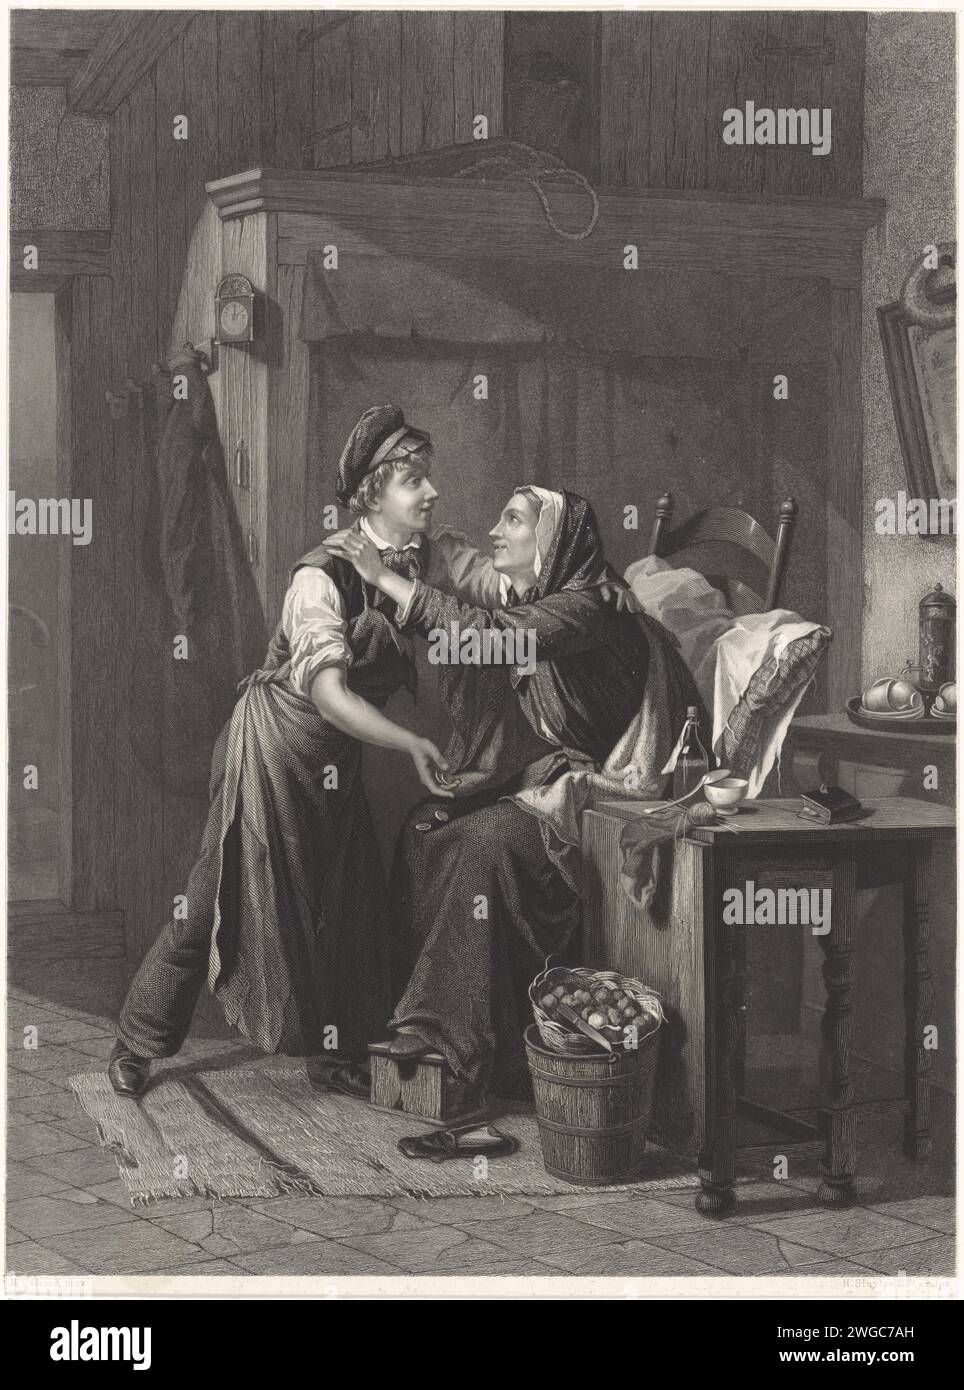 La femme embrasse le garçon, Hendrik D. Jzn Sluyter, d'après Moritz Calisch, 1854 - 1931 imprimer dans un intérieur simple, il y a une femme âgée, malade sur une chaise avec ses pieds sur un ragoût et un oreiller dans le dos. Elle embrasse un jeune homme avec une casquette, qui jette de l'argent sur ses genoux. Sur la table à côté d'elle se trouvent un livre et un tricot. A côté d'elle un bol avec cuillère. Sur le sol un panier avec des tubercules ou des pommes de terre et un éplucheur. Derrière elle sur une table un service à café avec des tasses. Amsterdam gravure sur papier / gravure couple inégal, couple mal assorti. cafetière. livre Banque D'Images